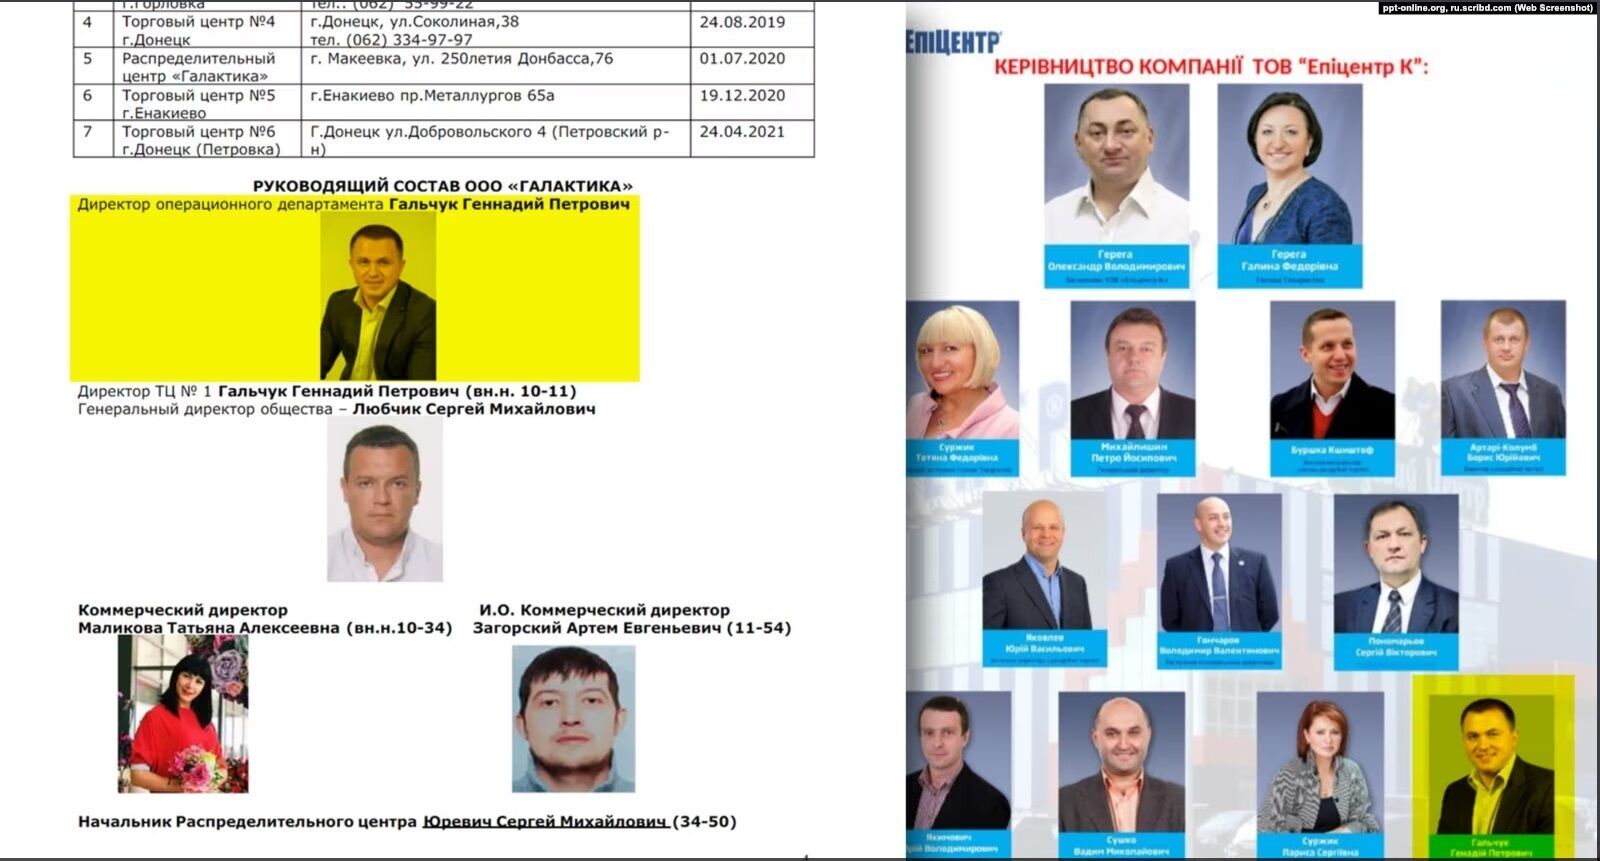 Александр Герега, народный депутат Украины, финансировал бывшего директора гипермаркета на оккупированной территории